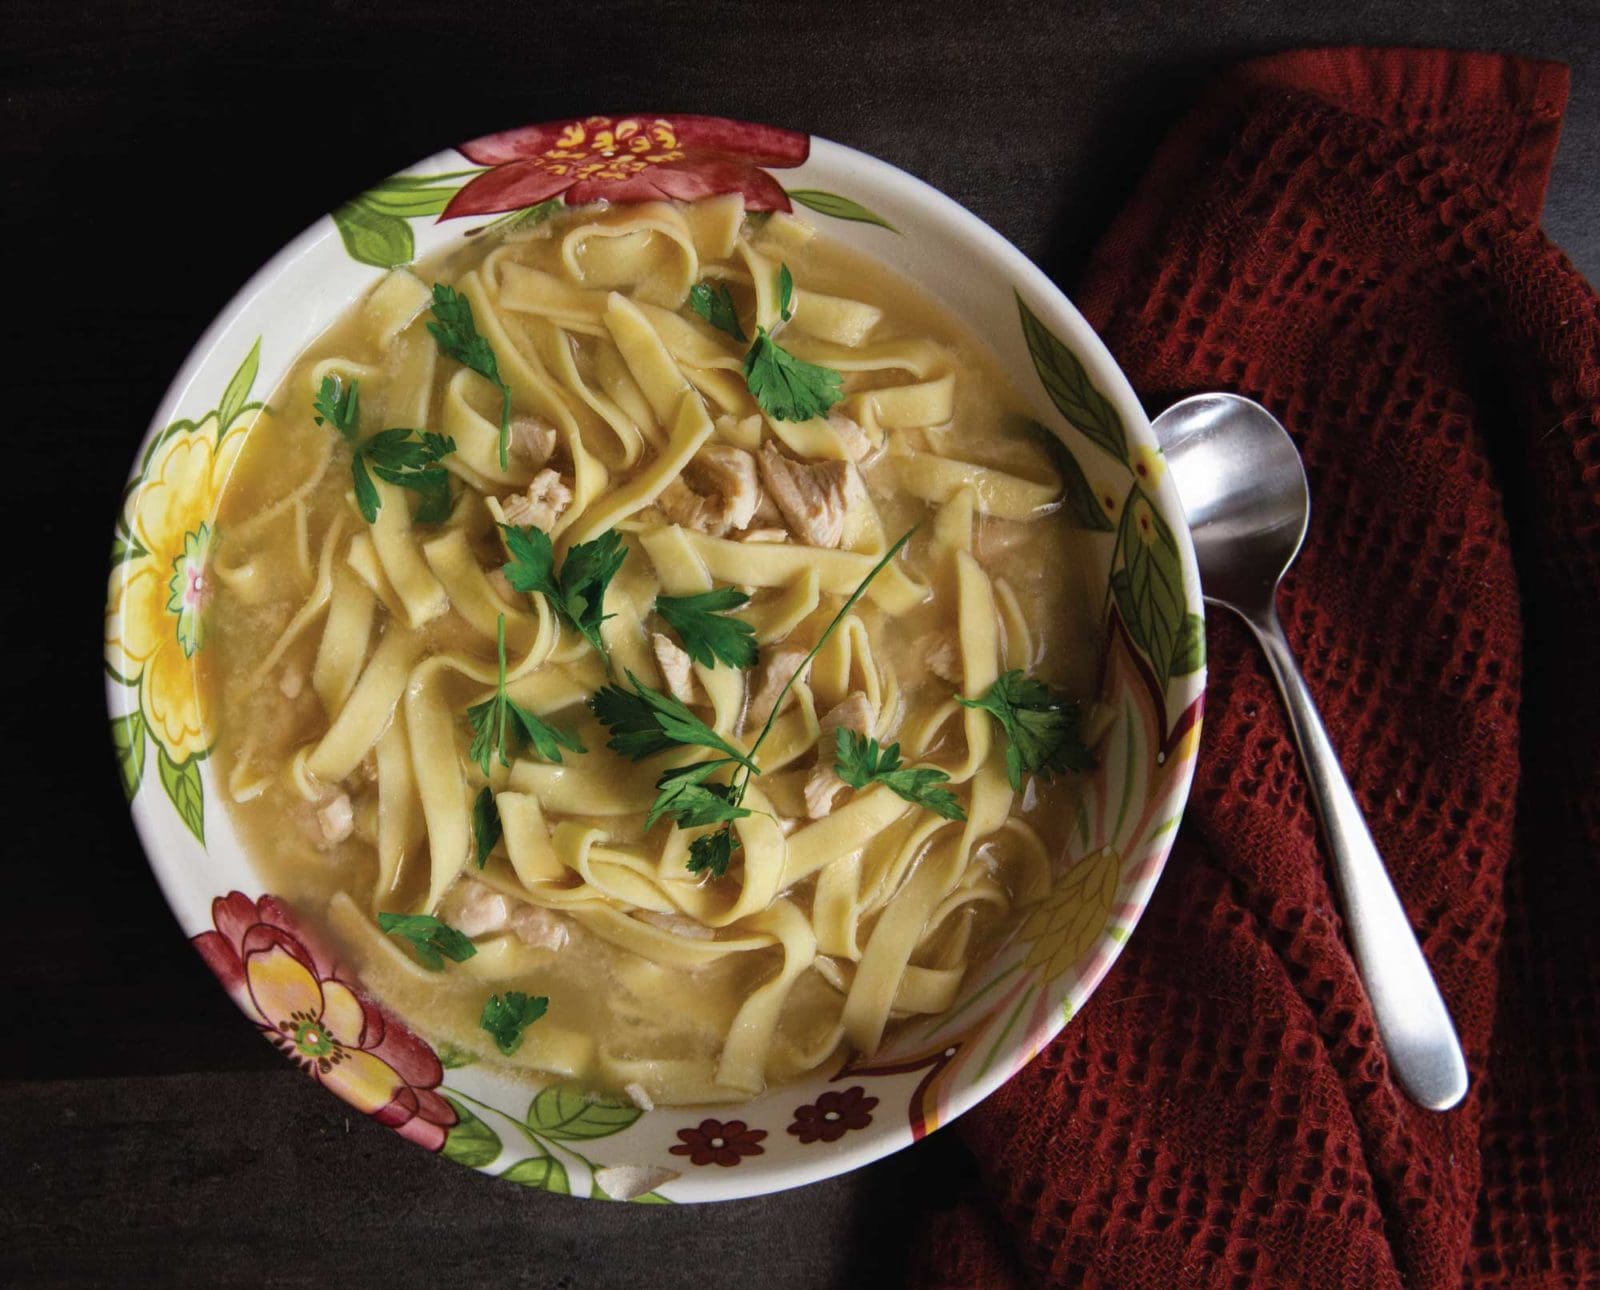 Warm Pheasant Noodle soup in a bowl